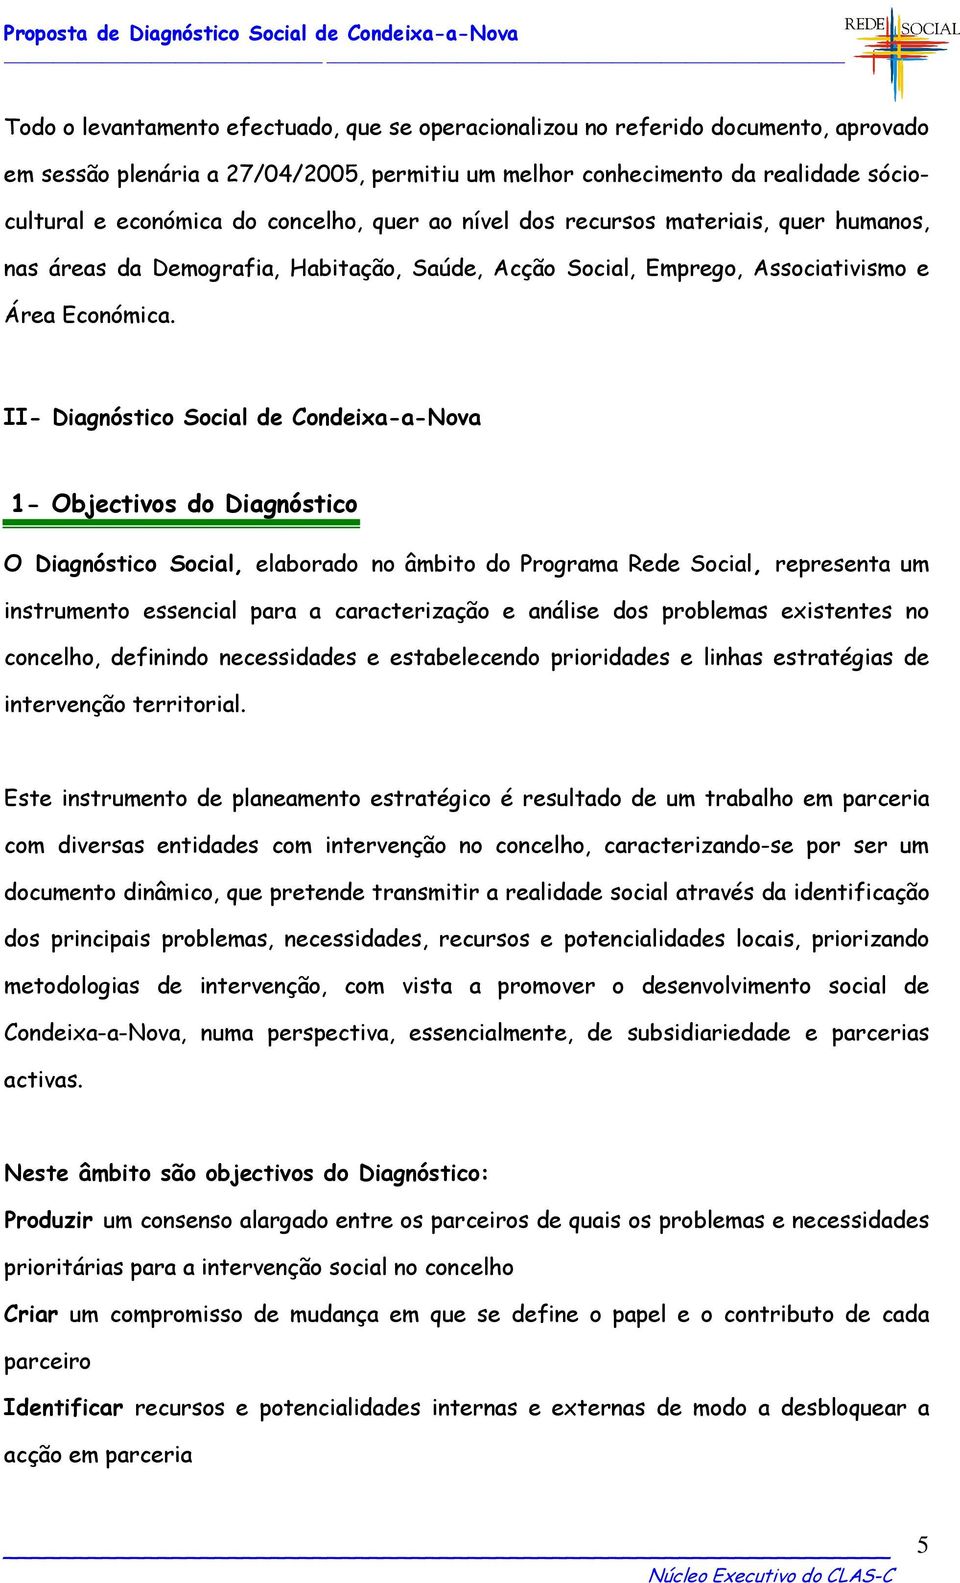 II- Diagnóstico Social de Condeixa-a-Nova 1- Objectivos do Diagnóstico O Diagnóstico Social, elaborado no âmbito do Programa Rede Social, representa um instrumento essencial para a caracterização e